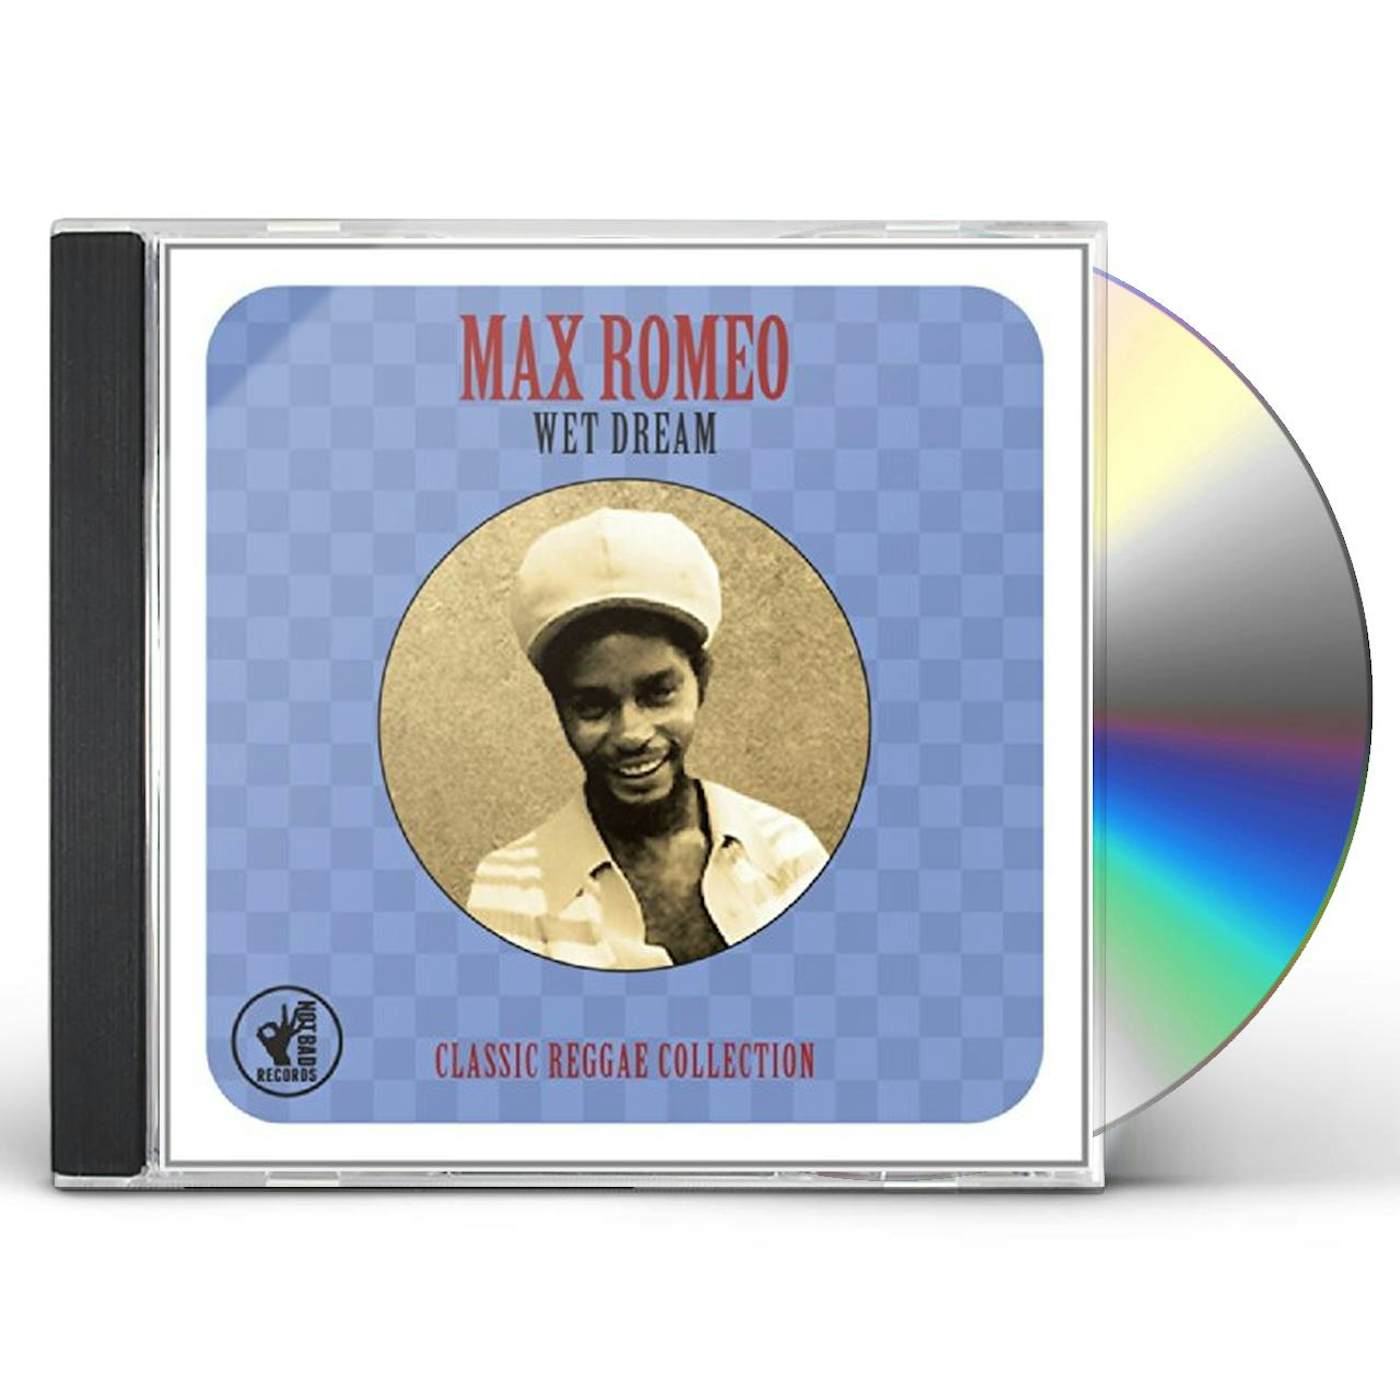 Max Romeo WET DREAM CLASSIC REGGAE COLLECTION CD